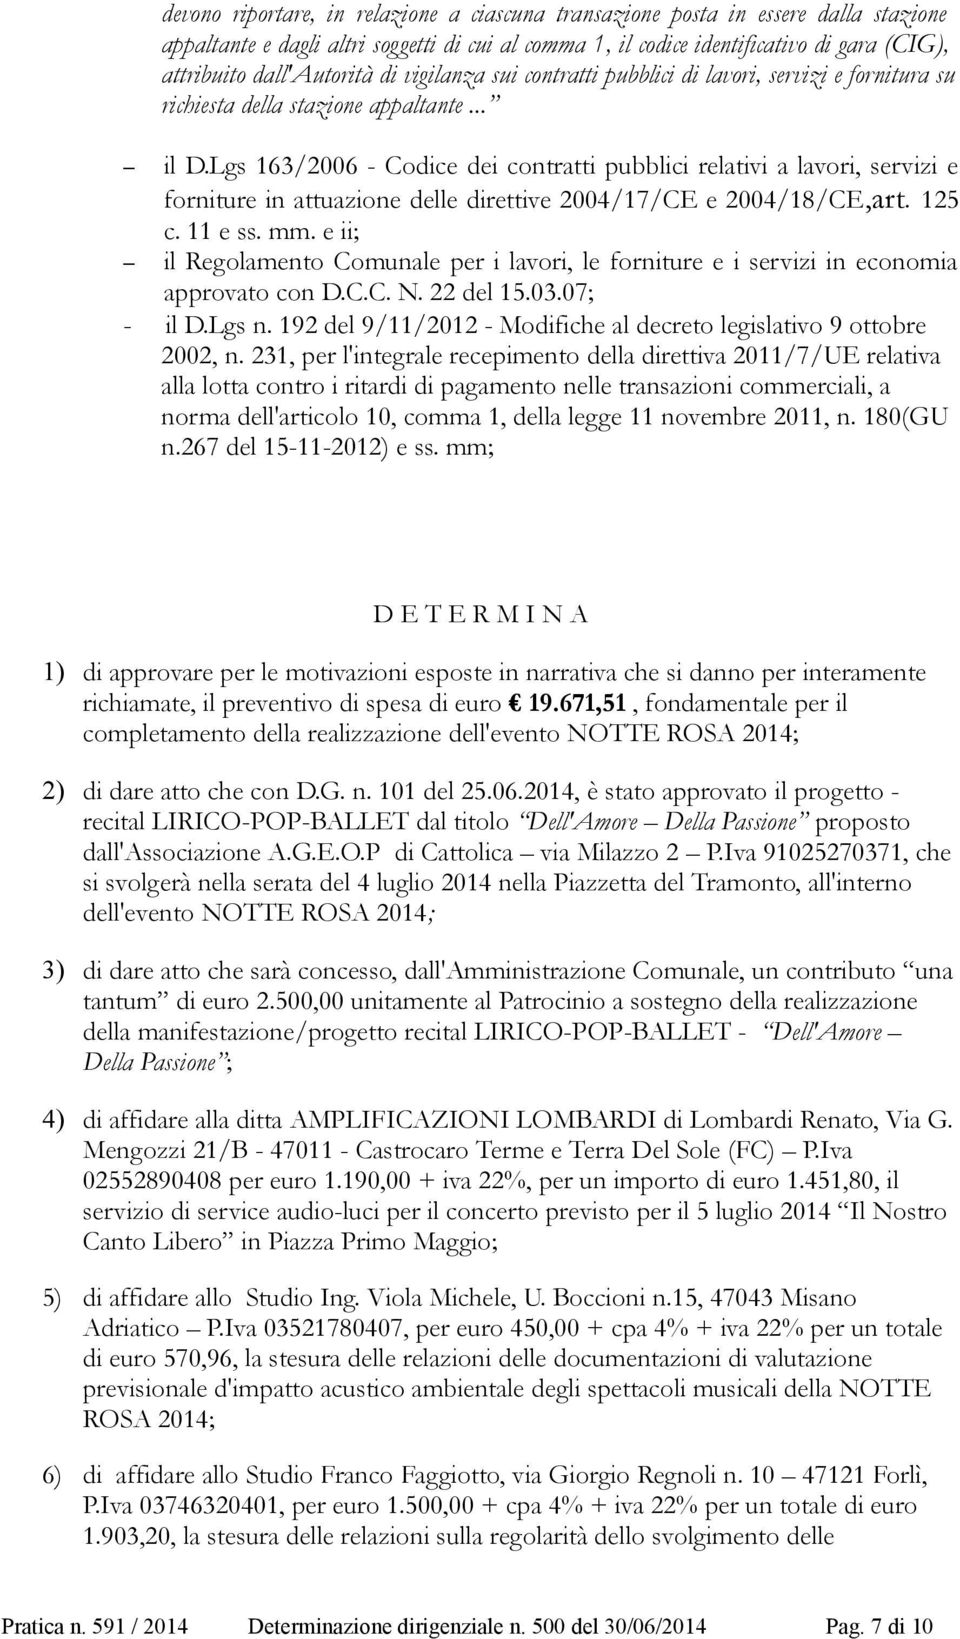 Lgs 163/2006 - Codice dei contratti pubblici relativi a lavori, servizi e forniture in attuazione delle direttive 2004/17/CE e 2004/18/CE,art. 125 c. 11 e ss. mm.